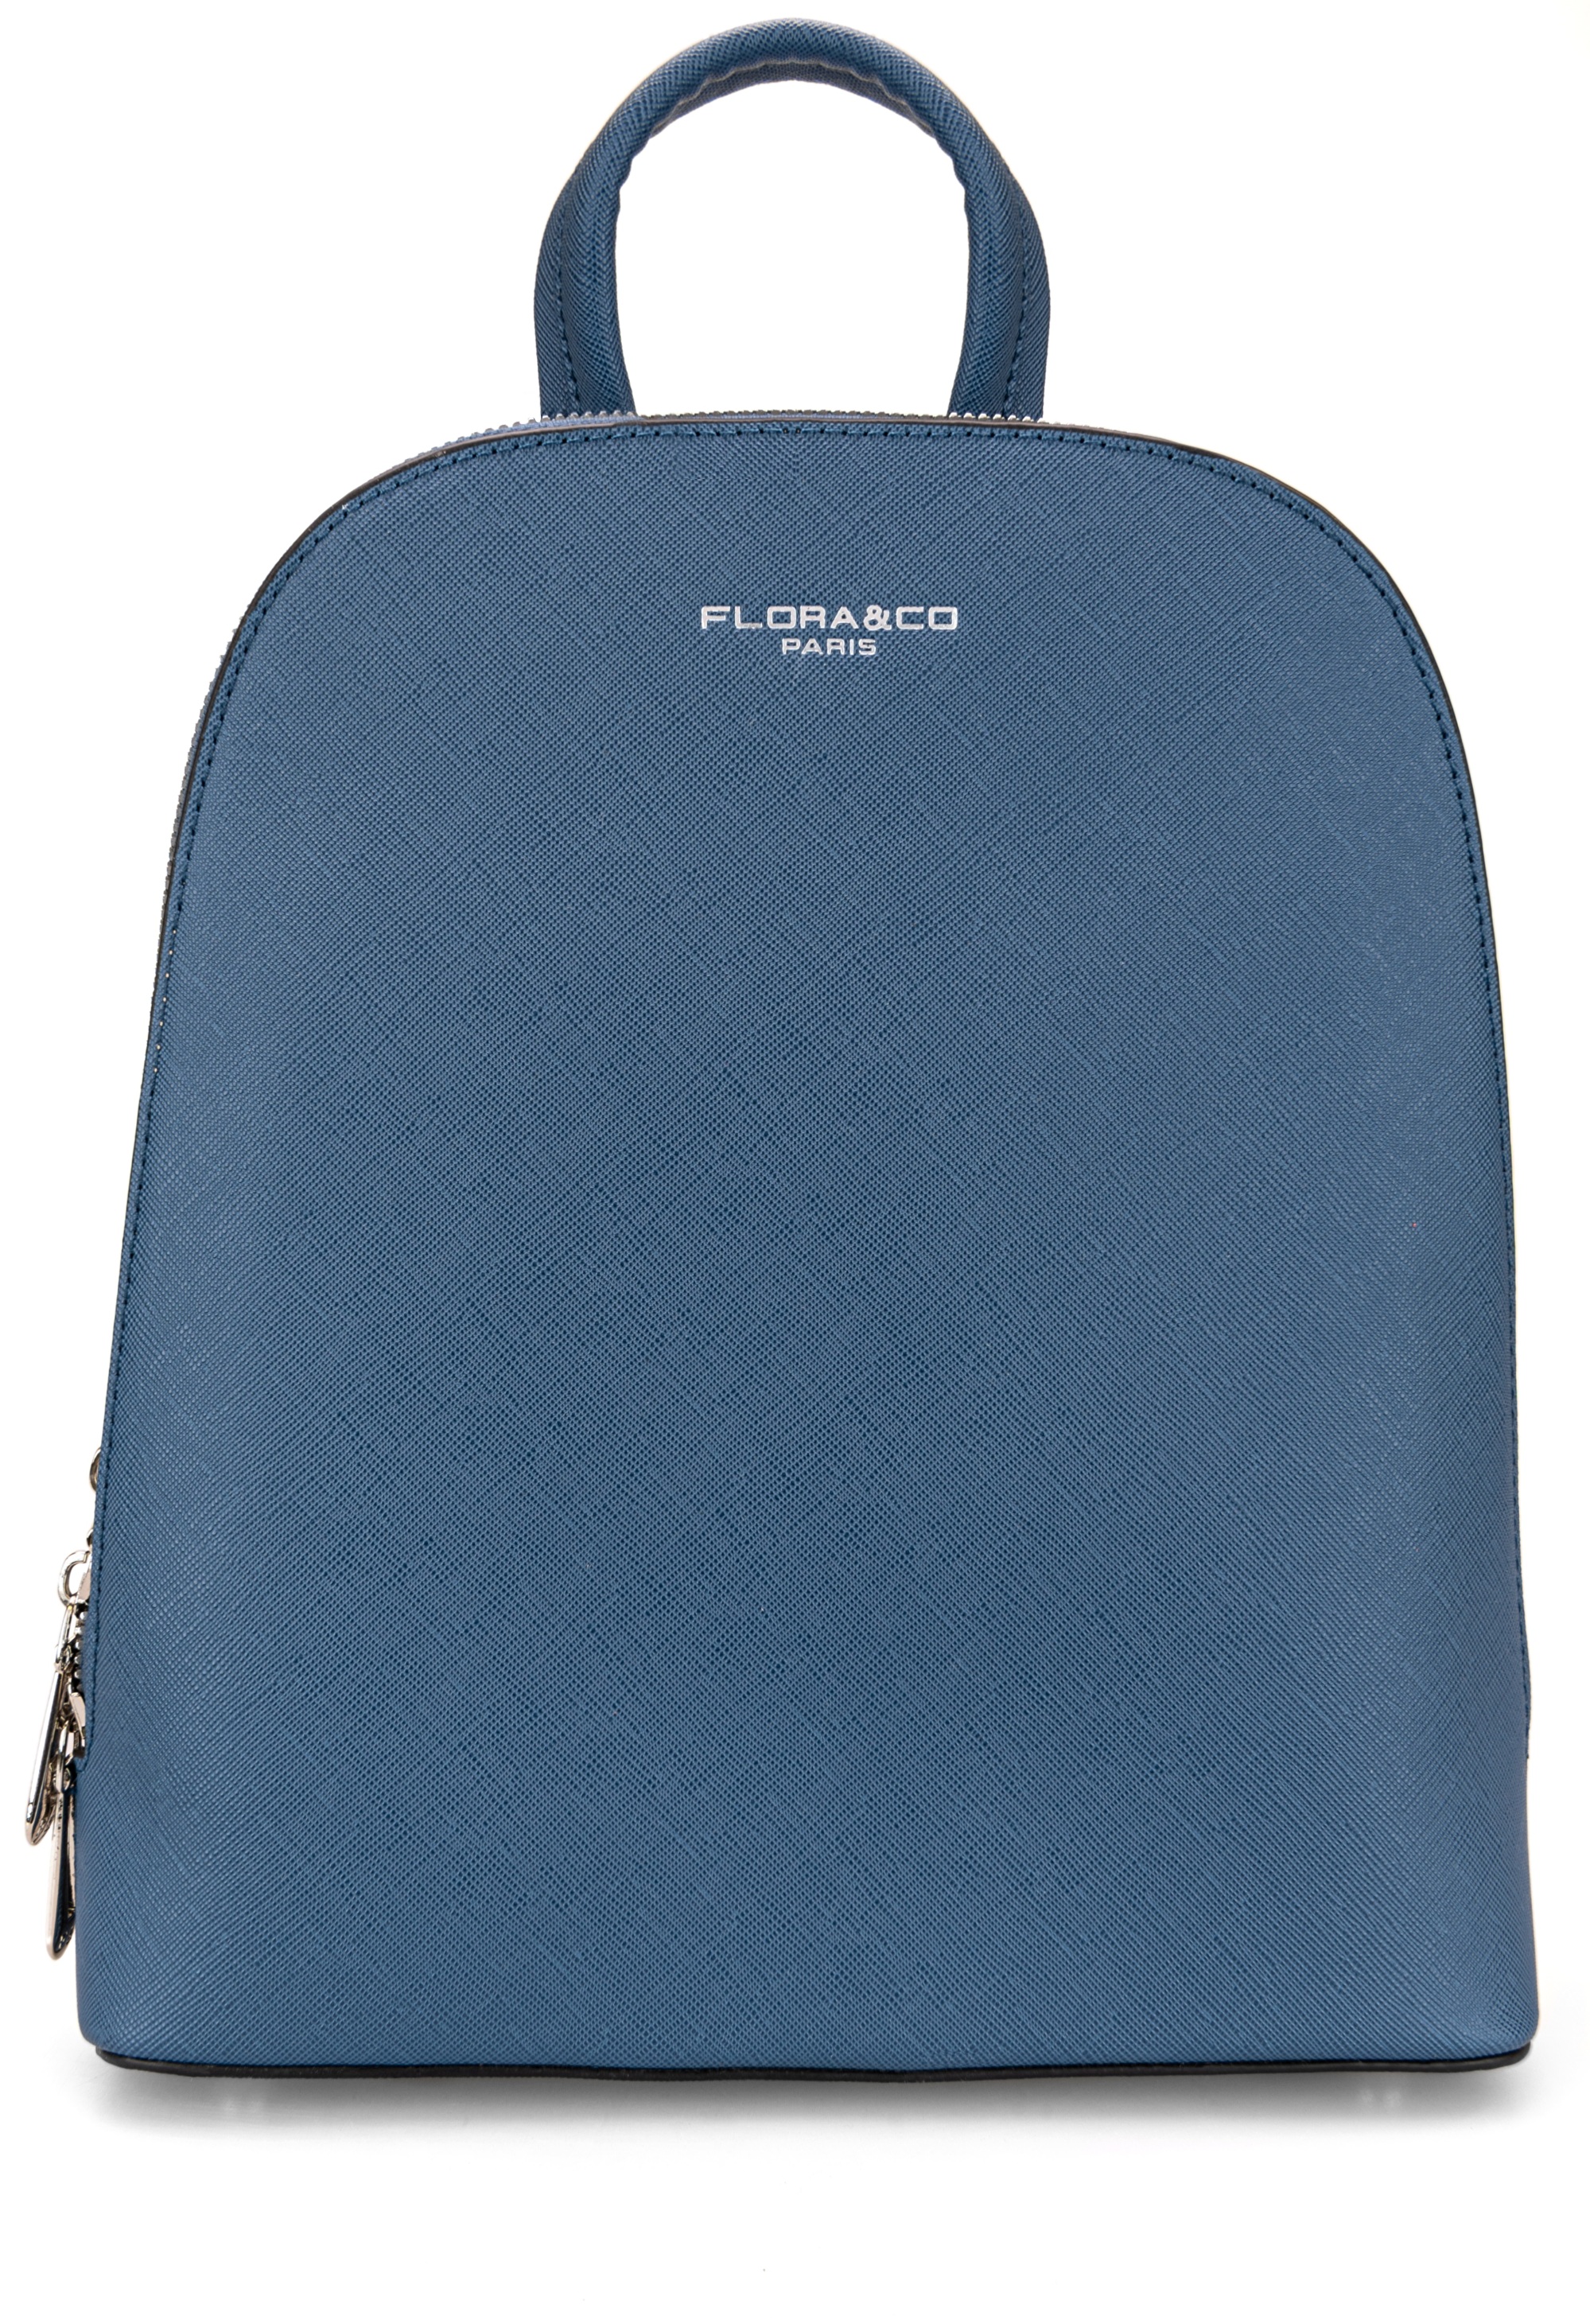 FLORA & CO Női hátizsák 6546 bleu jean